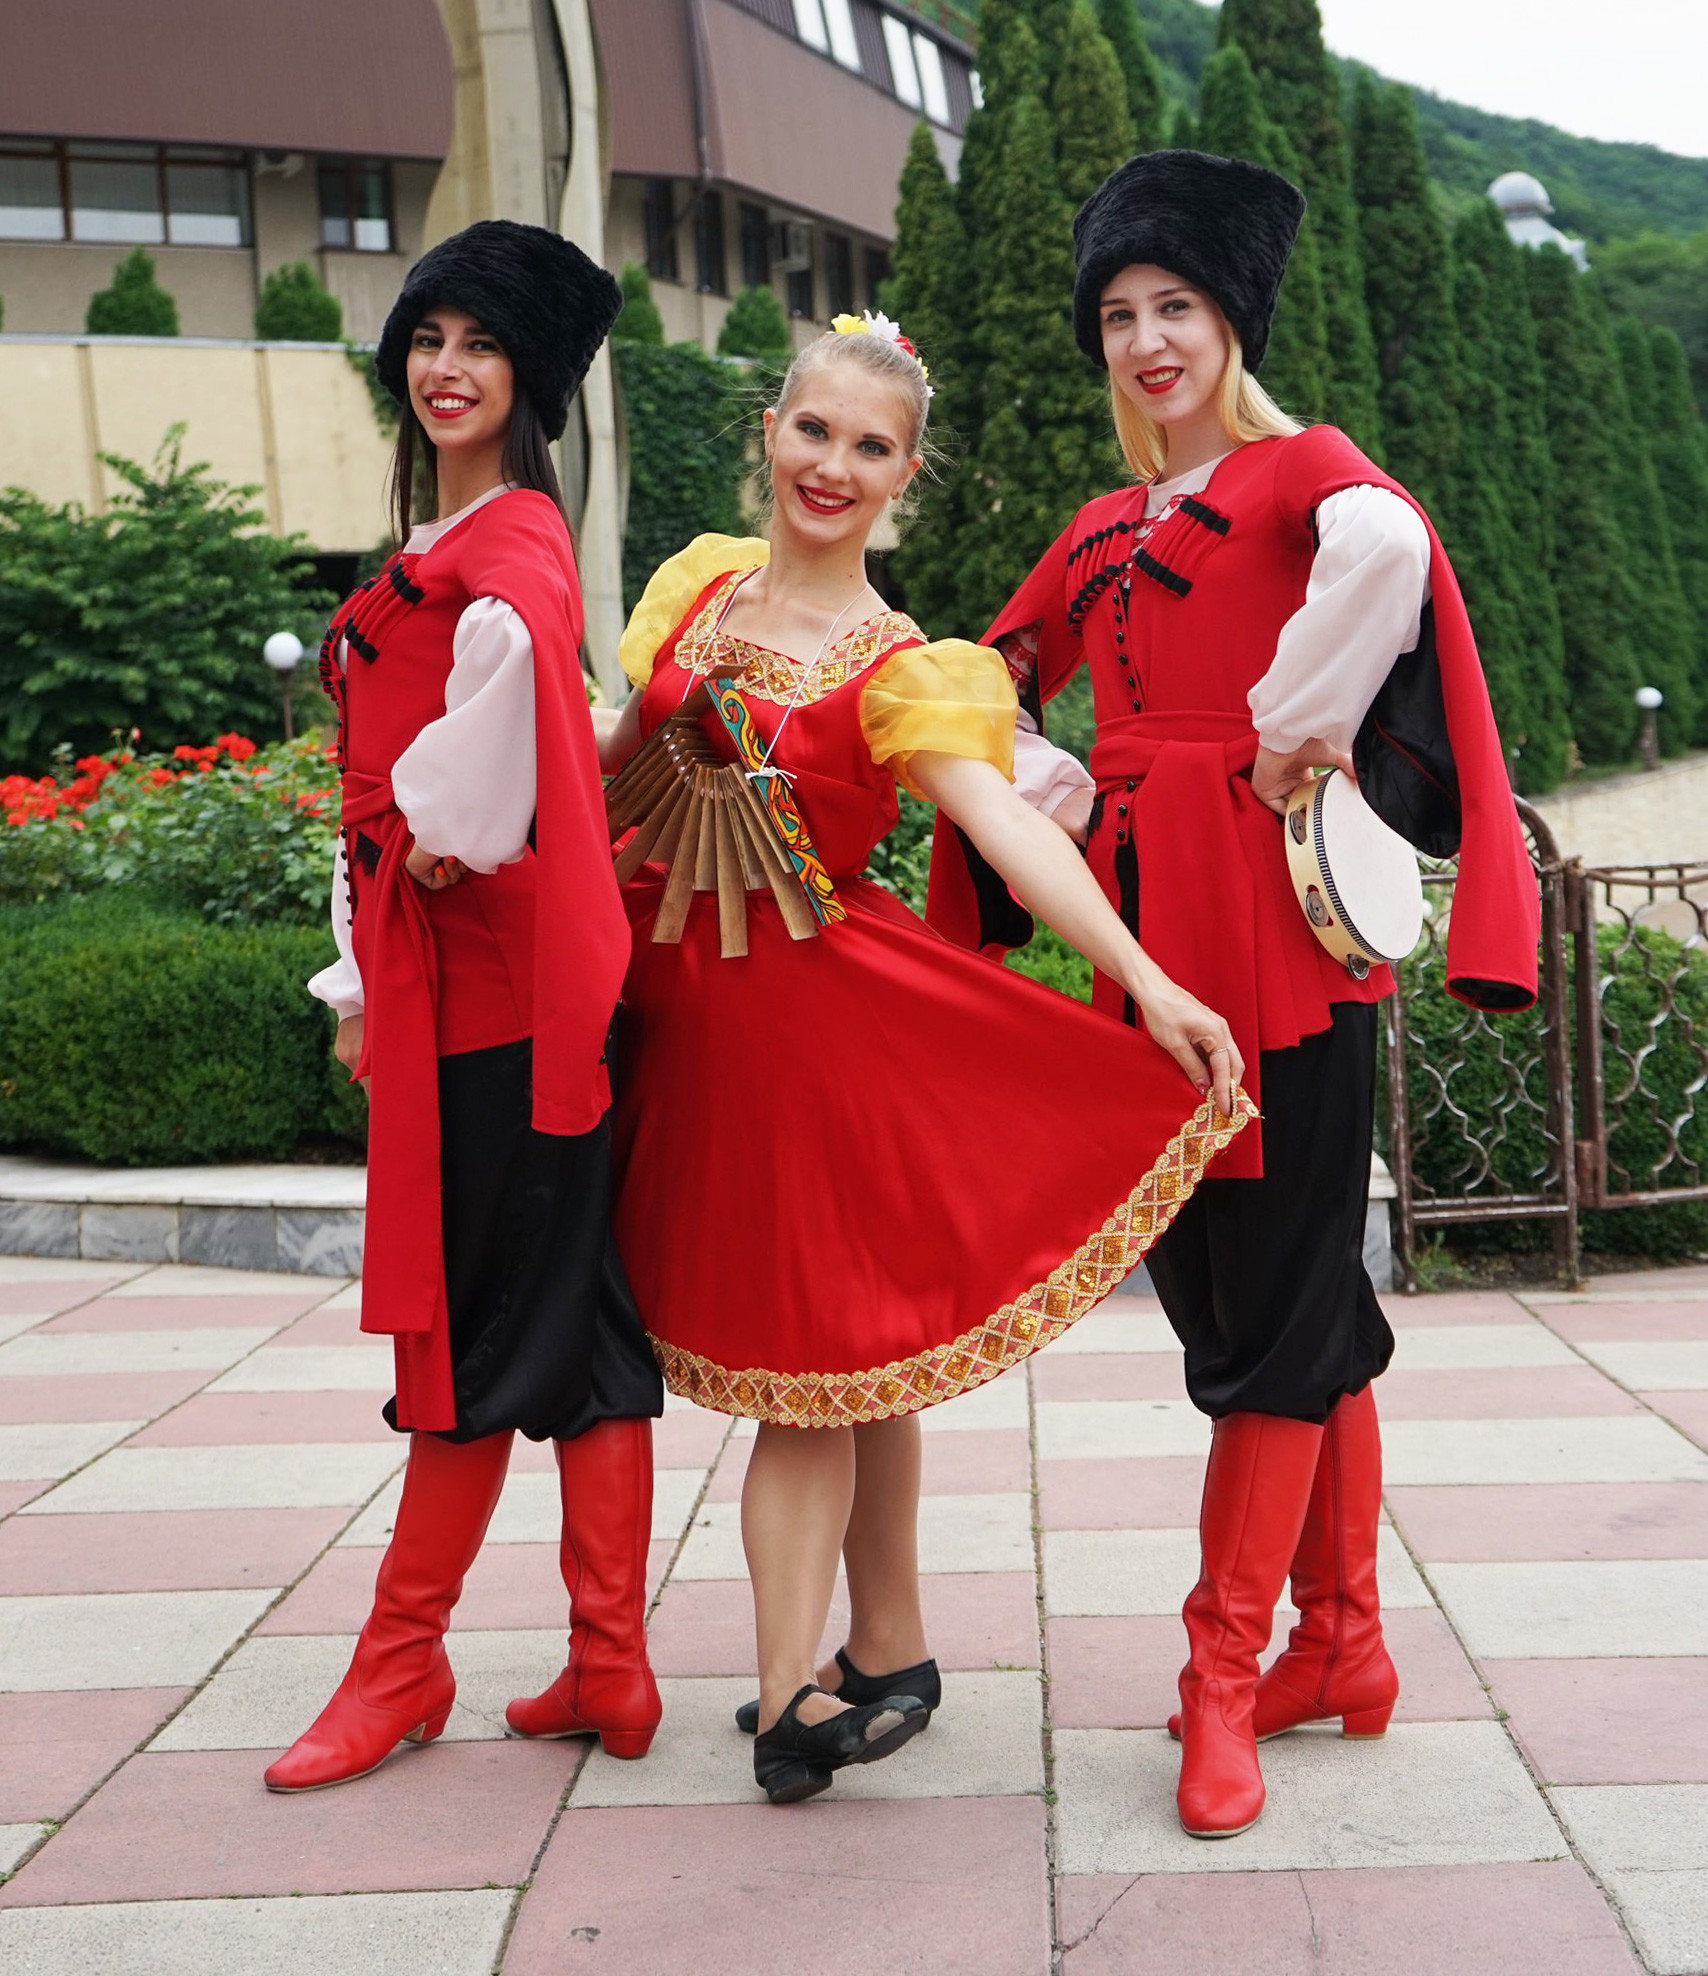 Estas bailarines vestidos con trajes clásicos caucásicos realiza espectáculos en antiguos sanatorios de estilo soviético en las ciudades balnearias rusas de Piatigorsk y Kislovdsk. Eran los favoritos de los zares, la aristocracia y los artistas. Hoy en día tienen el aire morboso de una época pasada.